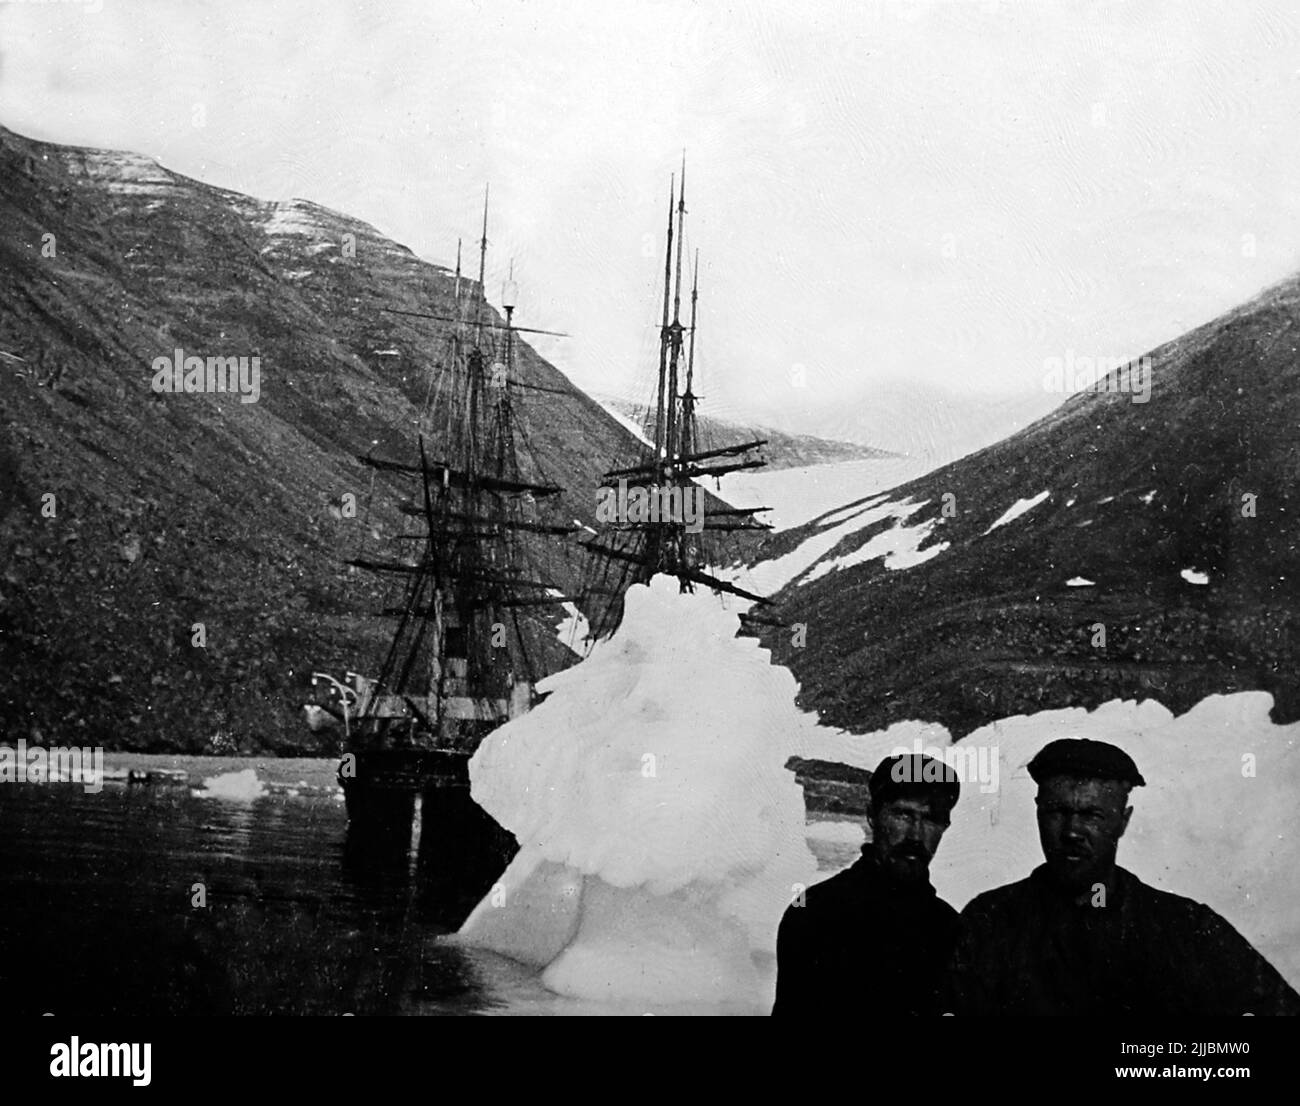 Navires Windward et Eric à Nuerke, Groenland, expédition arctique de Peary en 1901 Banque D'Images